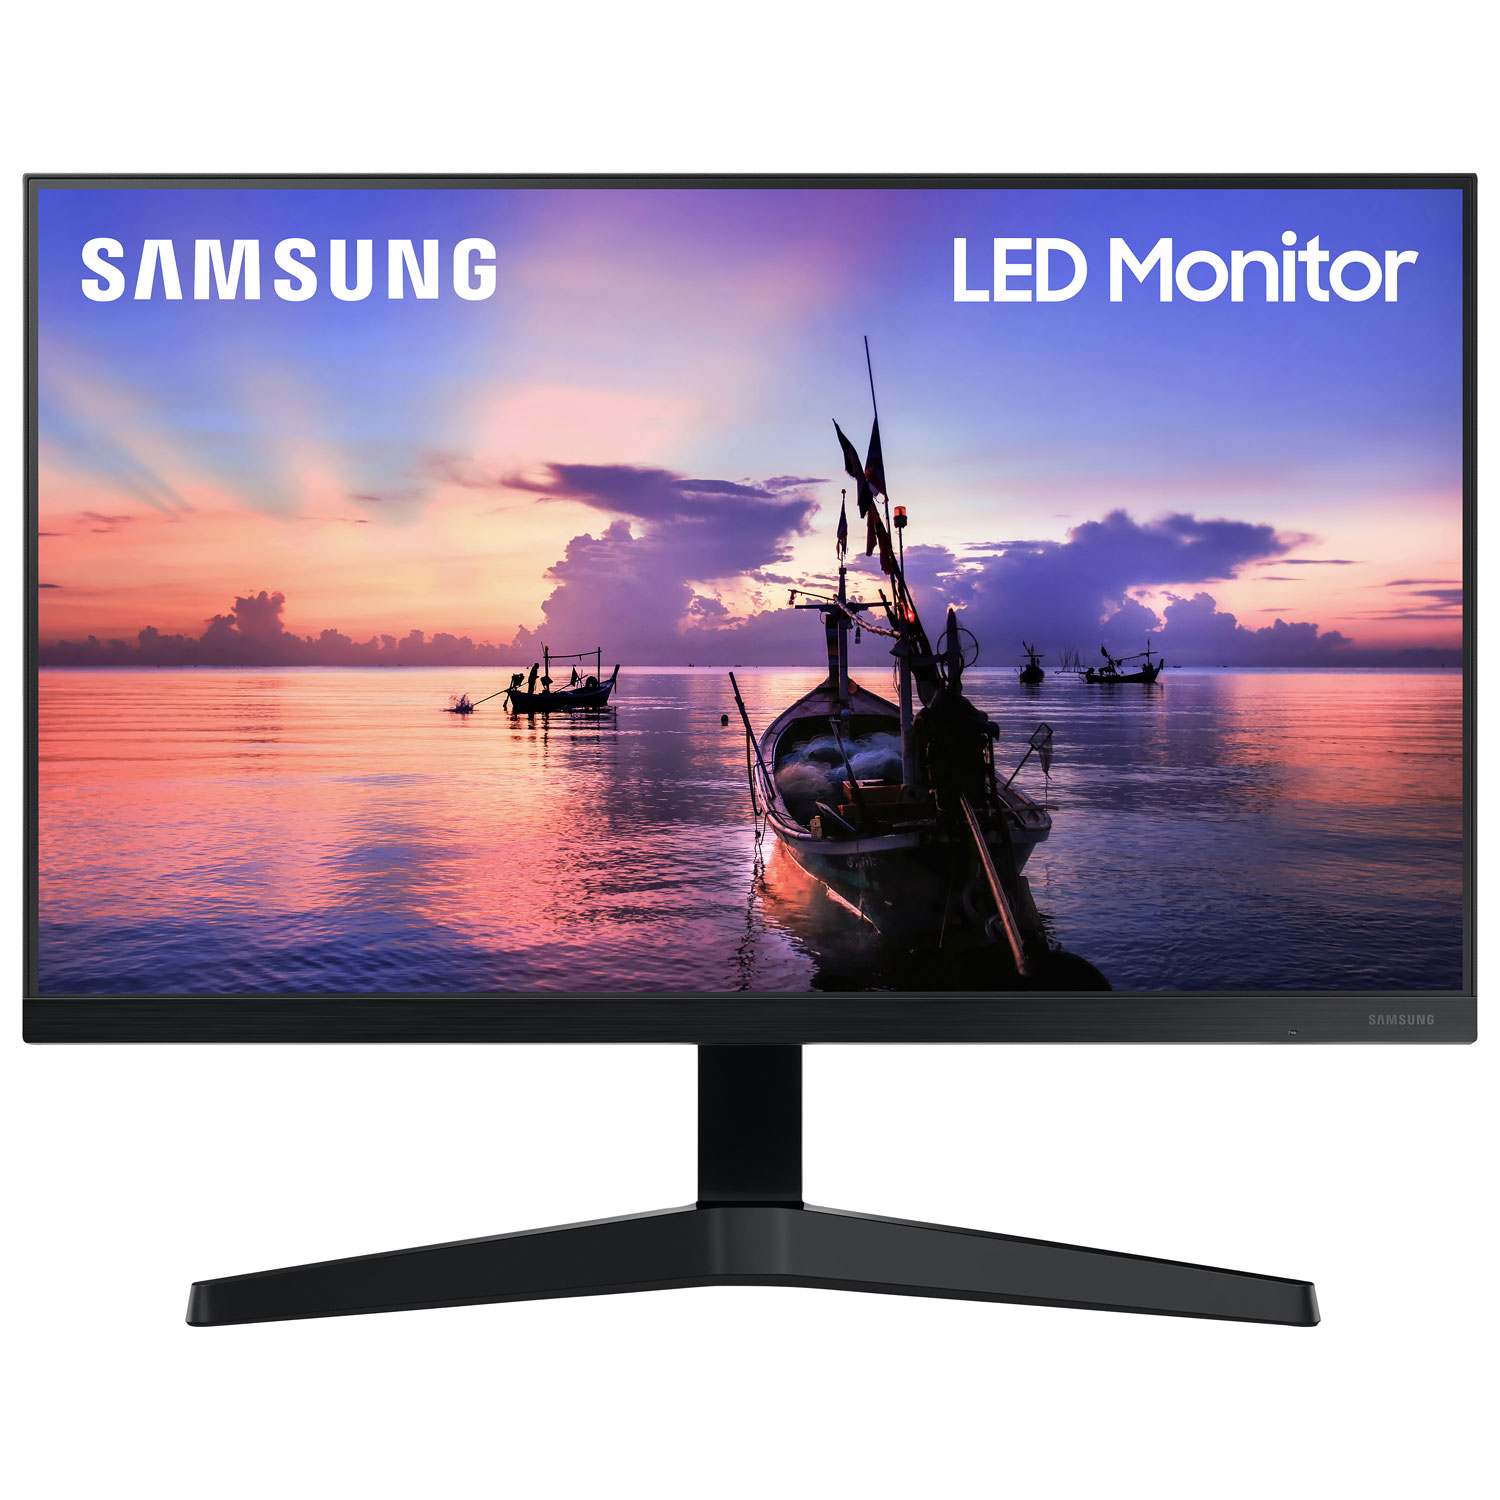 Samsung 24" FHD 75Hz 5ms GTG IPS LED FreeSync Gaming Monitor (LF24T350FHNXZA) - Dark Blue Grey